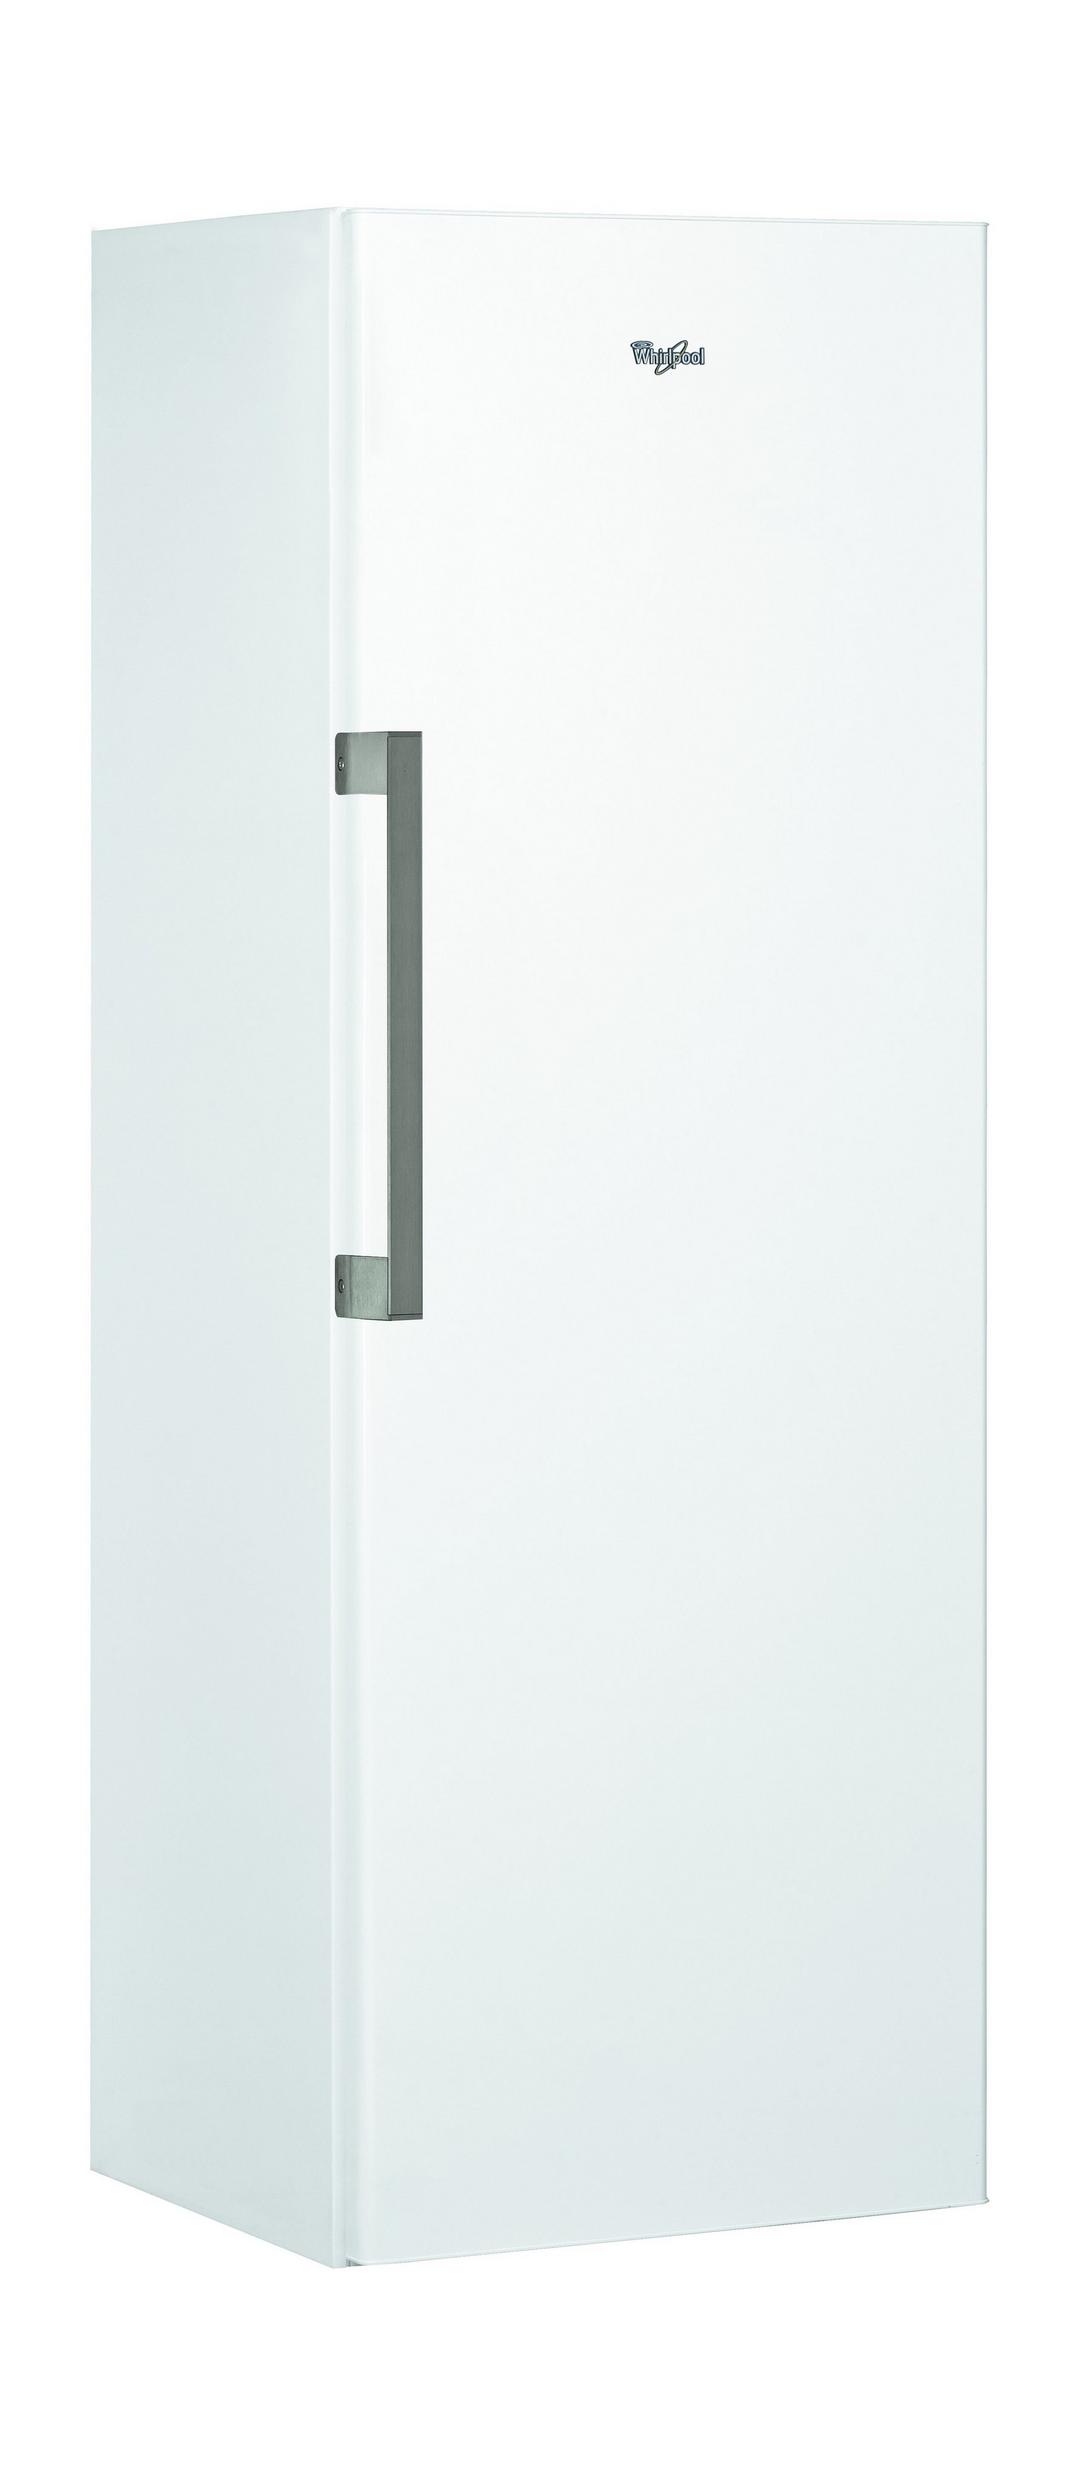 الفريزر المستقيم باب واحد بحجم ١٠ قدم من ويرلبول - أبيض (UW8 F2C WBI EX)